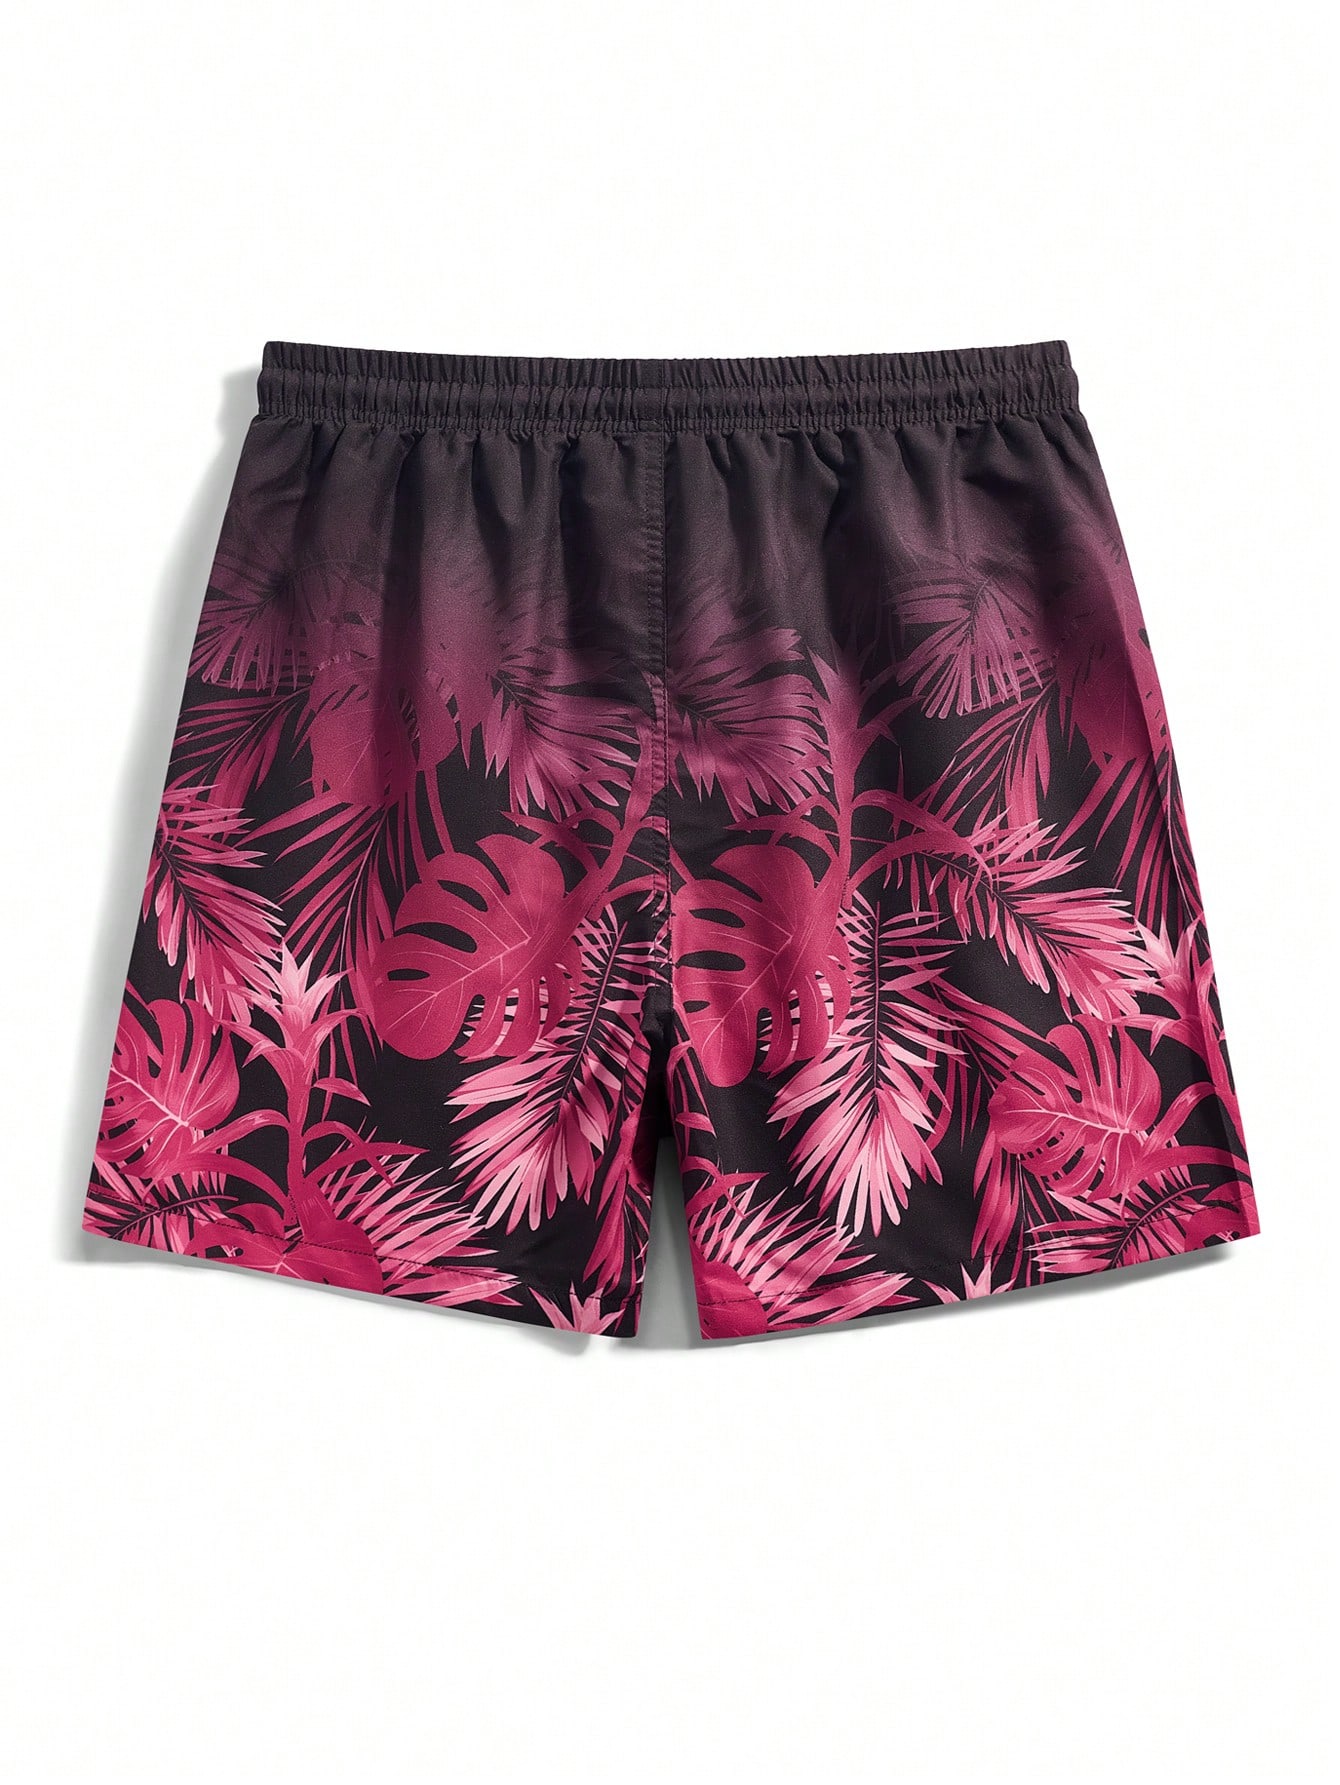 цена Мужские шорты Manfinity с принтом тропических растений для пляжной одежды, ярко-розовый